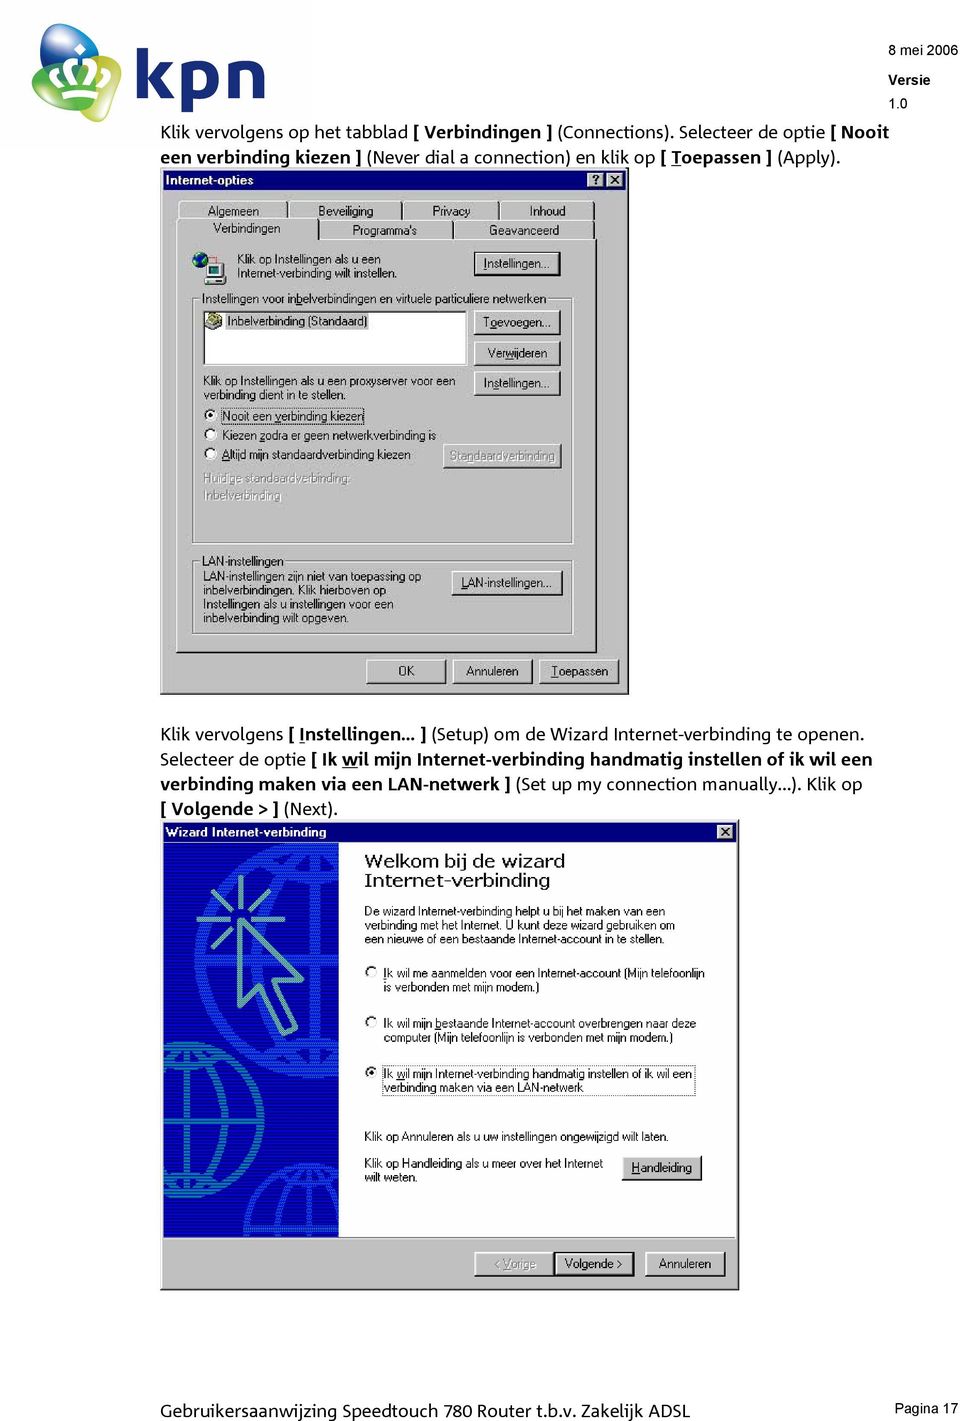 8 mei 2006 Klik vervolgens [ Instellingen... ] (Setup) om de Wizard Internet-verbinding te openen.